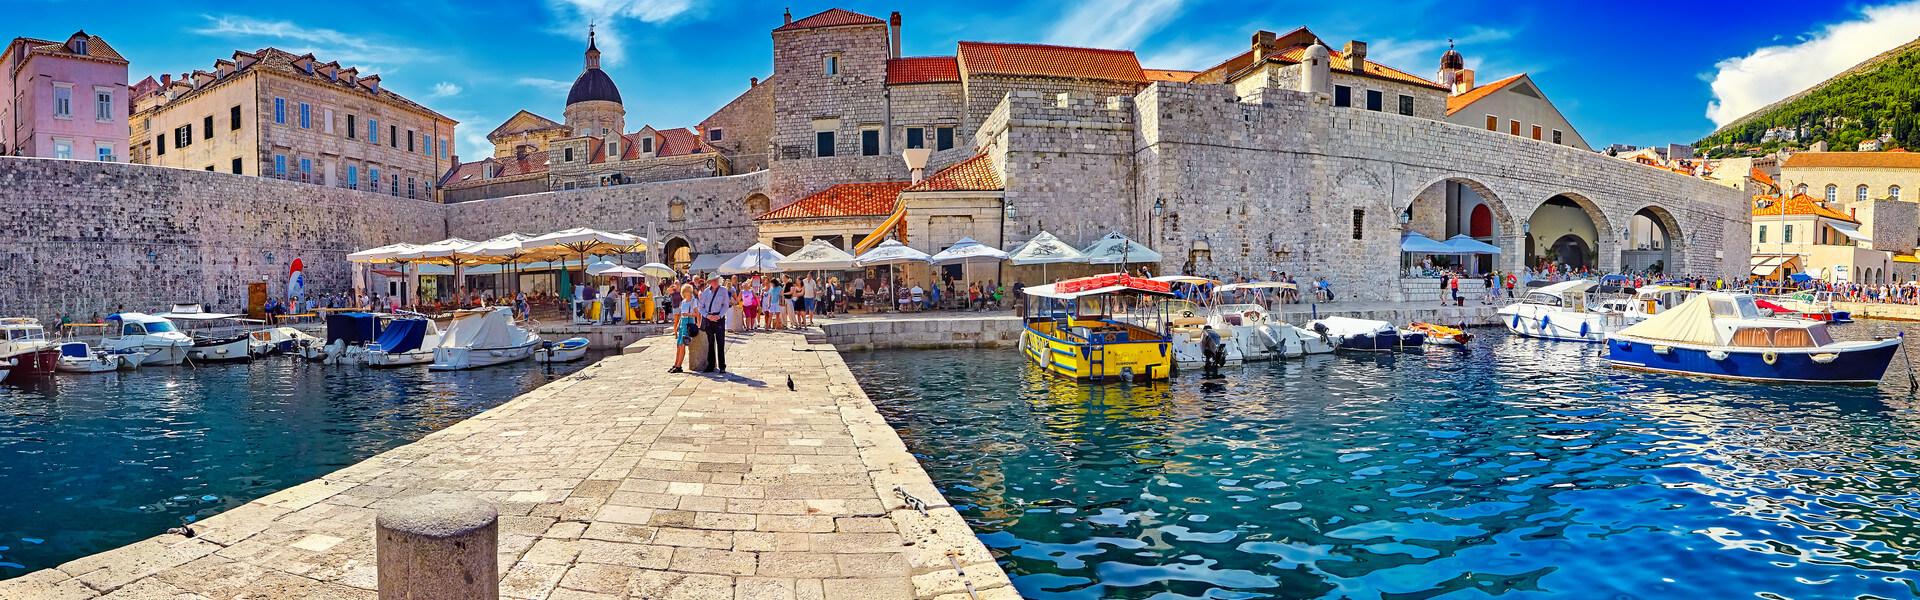 Dubrovnik-Neretvas län